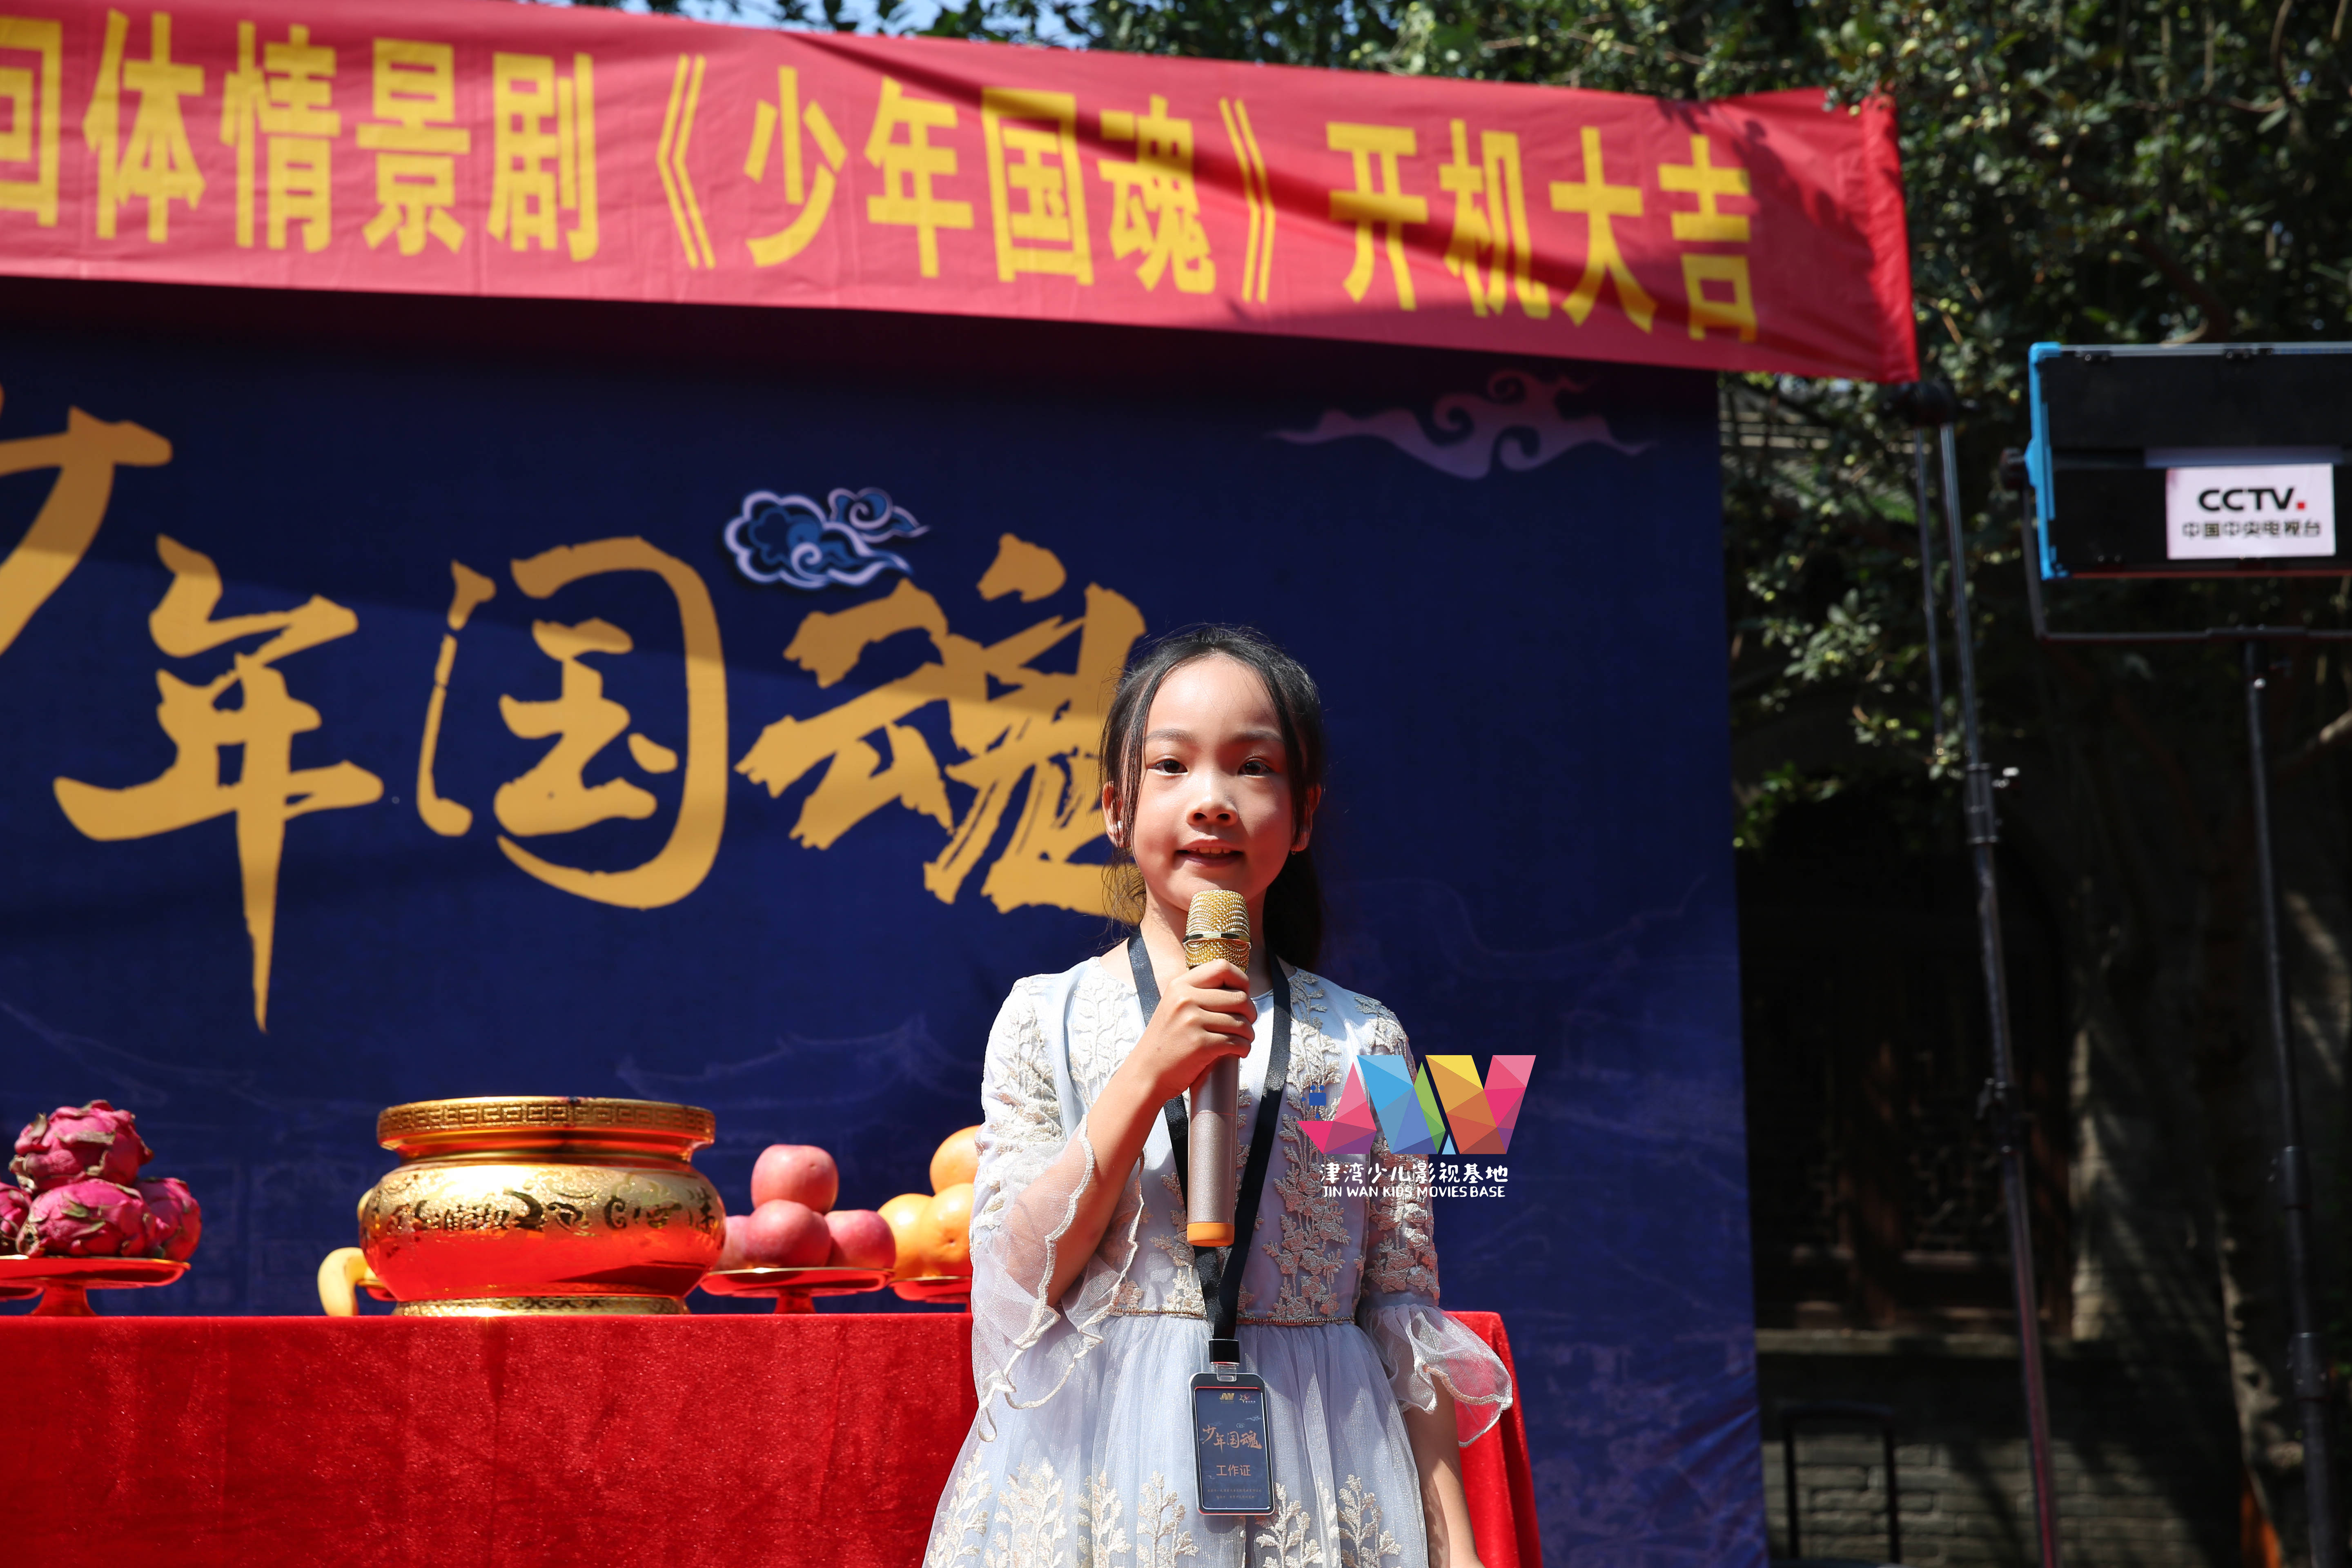 少儿历史剧《少年国魂宋朝篇》在天津市西青区杨柳青古镇举行了隆重的开机仪式